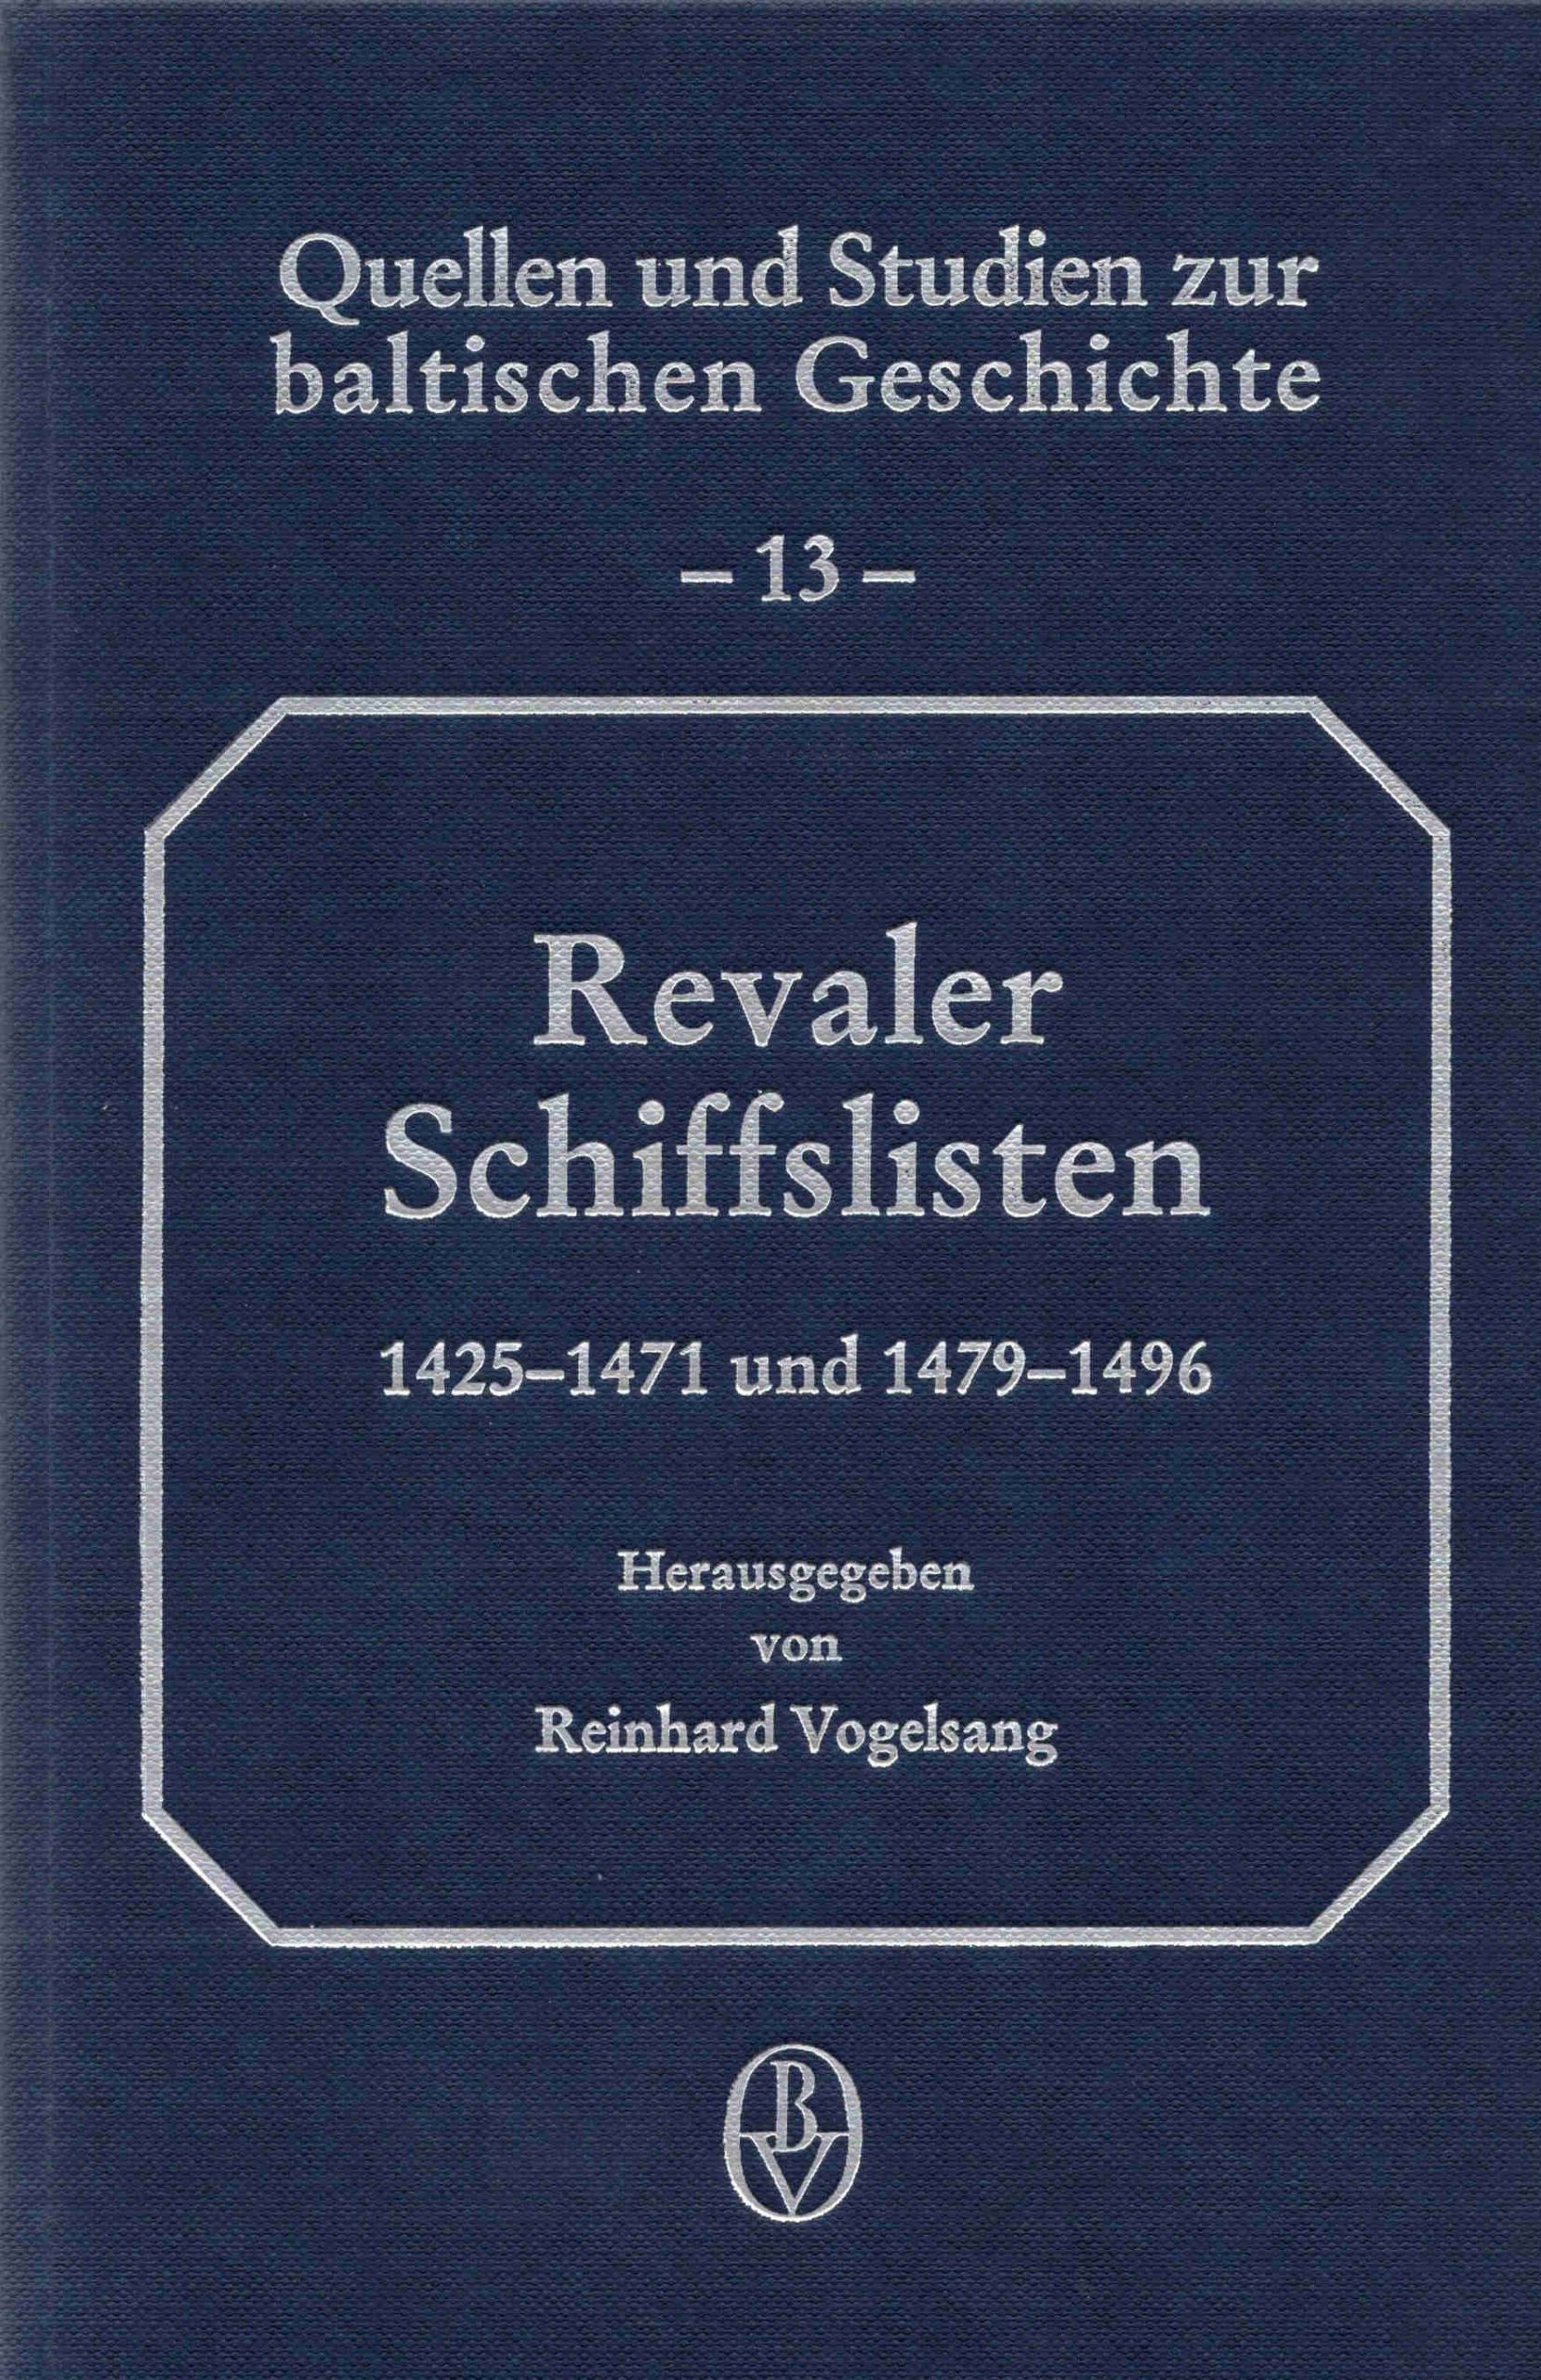 Band 13: Revaler Schiffslisten 1425-1471 und 1479-1496